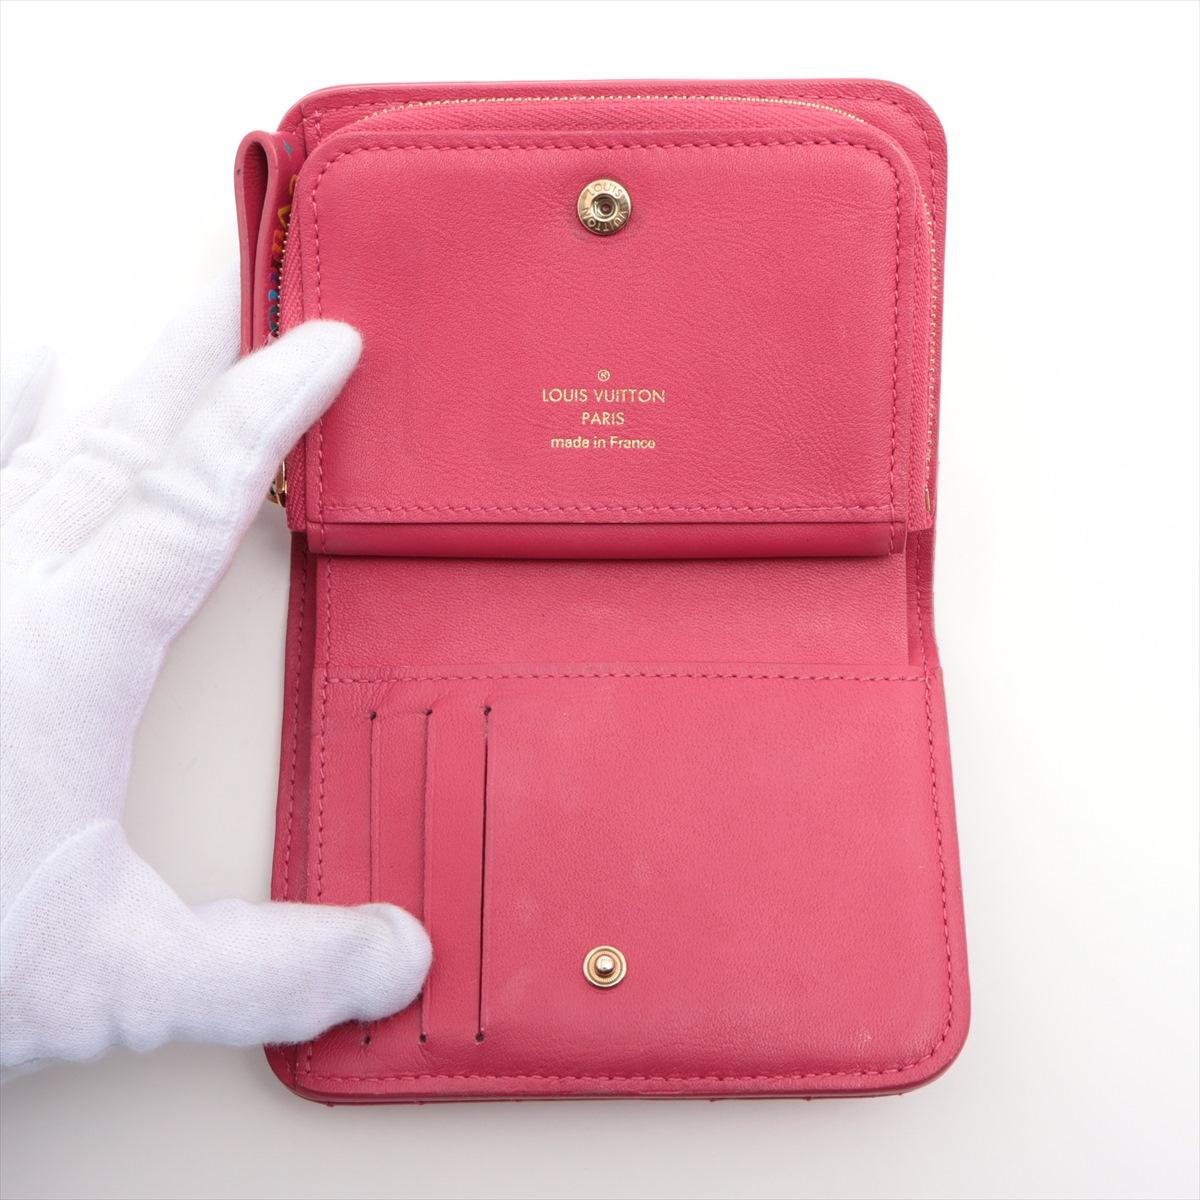 Women's Louis Vuitton New Wave Zipped Compact Wallet Fuchsia